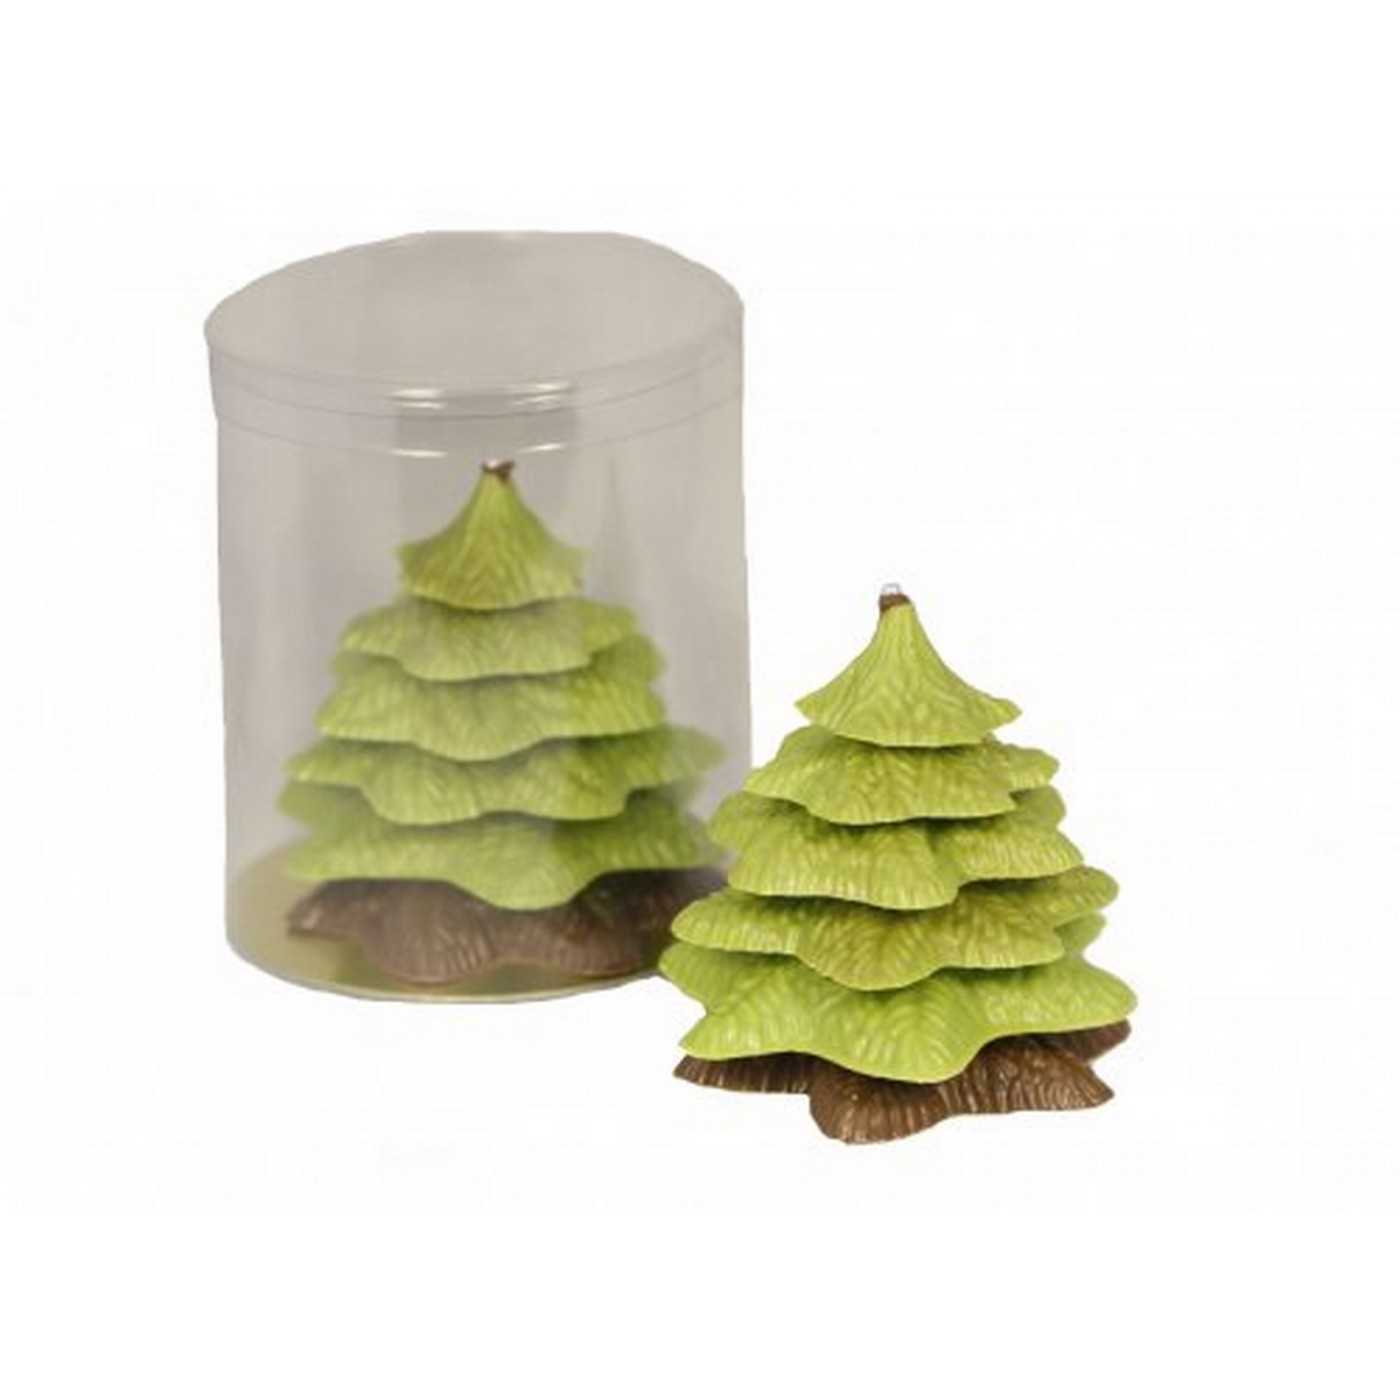 Kerstboom verpakt groen/melk 140g 1st